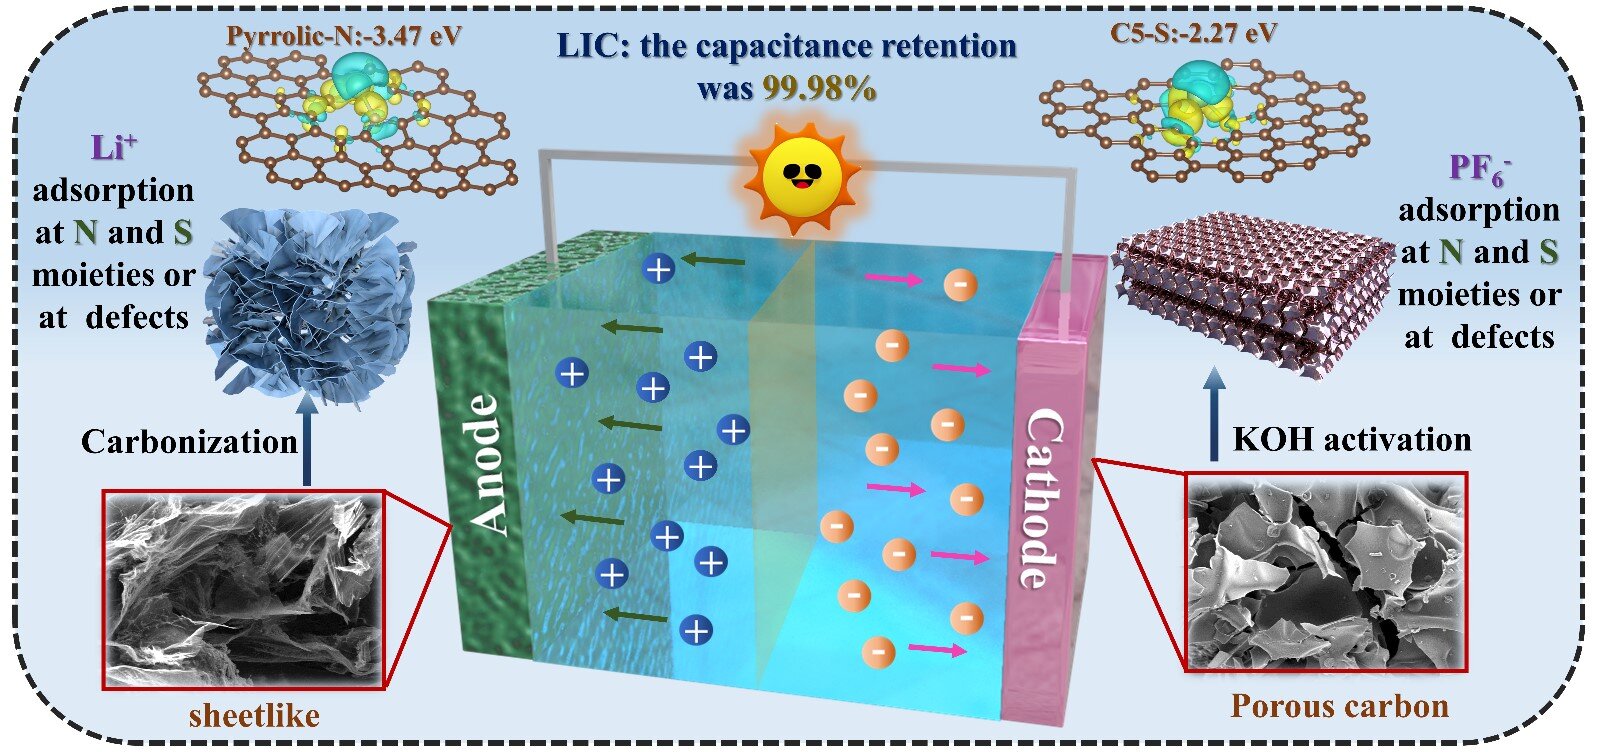 Thúc đẩy vật liệu nano carbon xốp pha tạp dị hợp tử cho các ứng dụng lưu trữ năng lượng dựa trên lithium